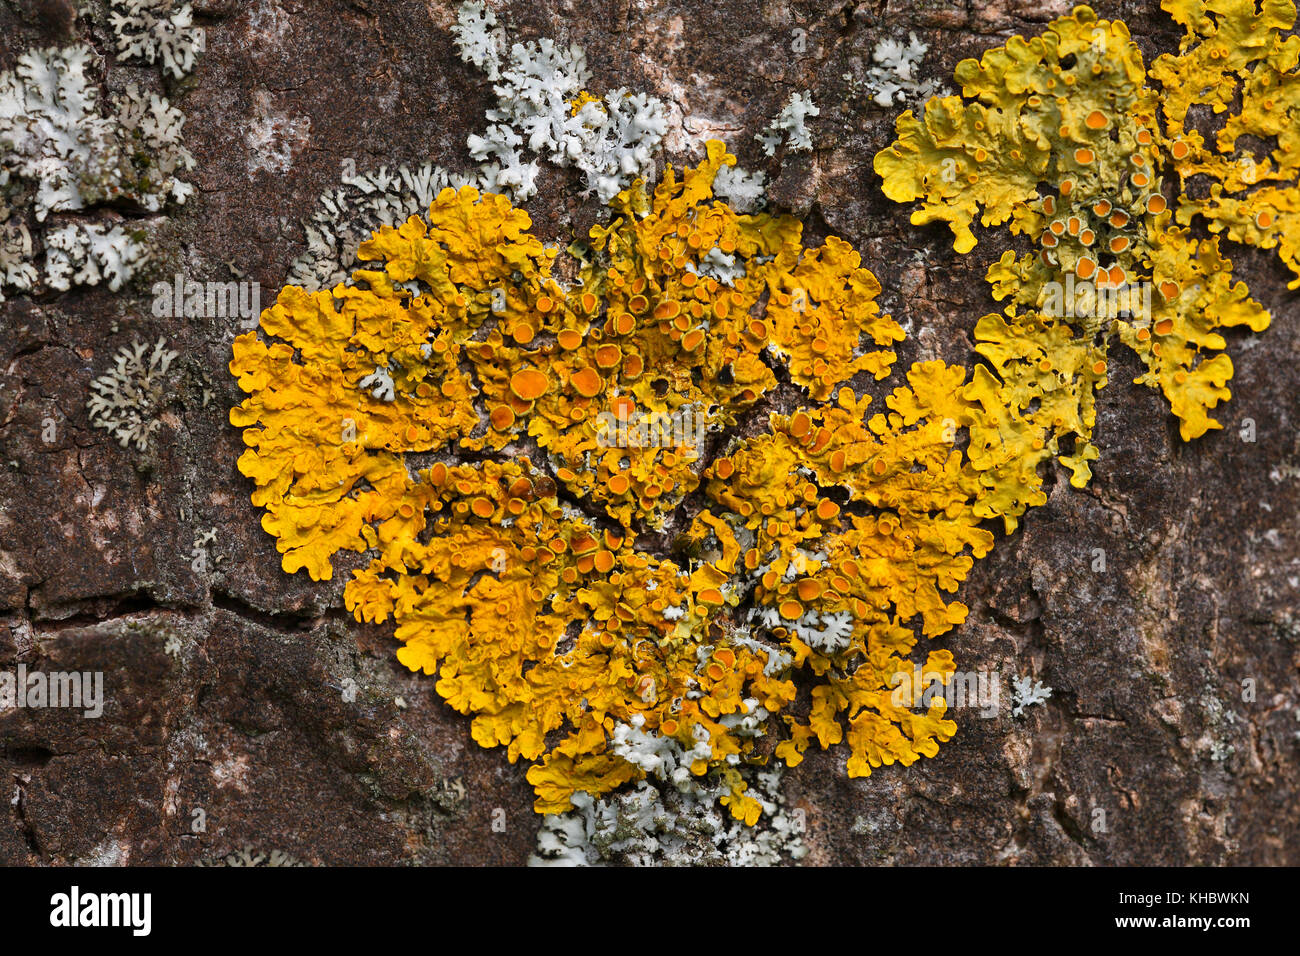 Common orange lichen (Xanthoria parietina) on bark, Schleswig-Holstein, Germany Stock Photo